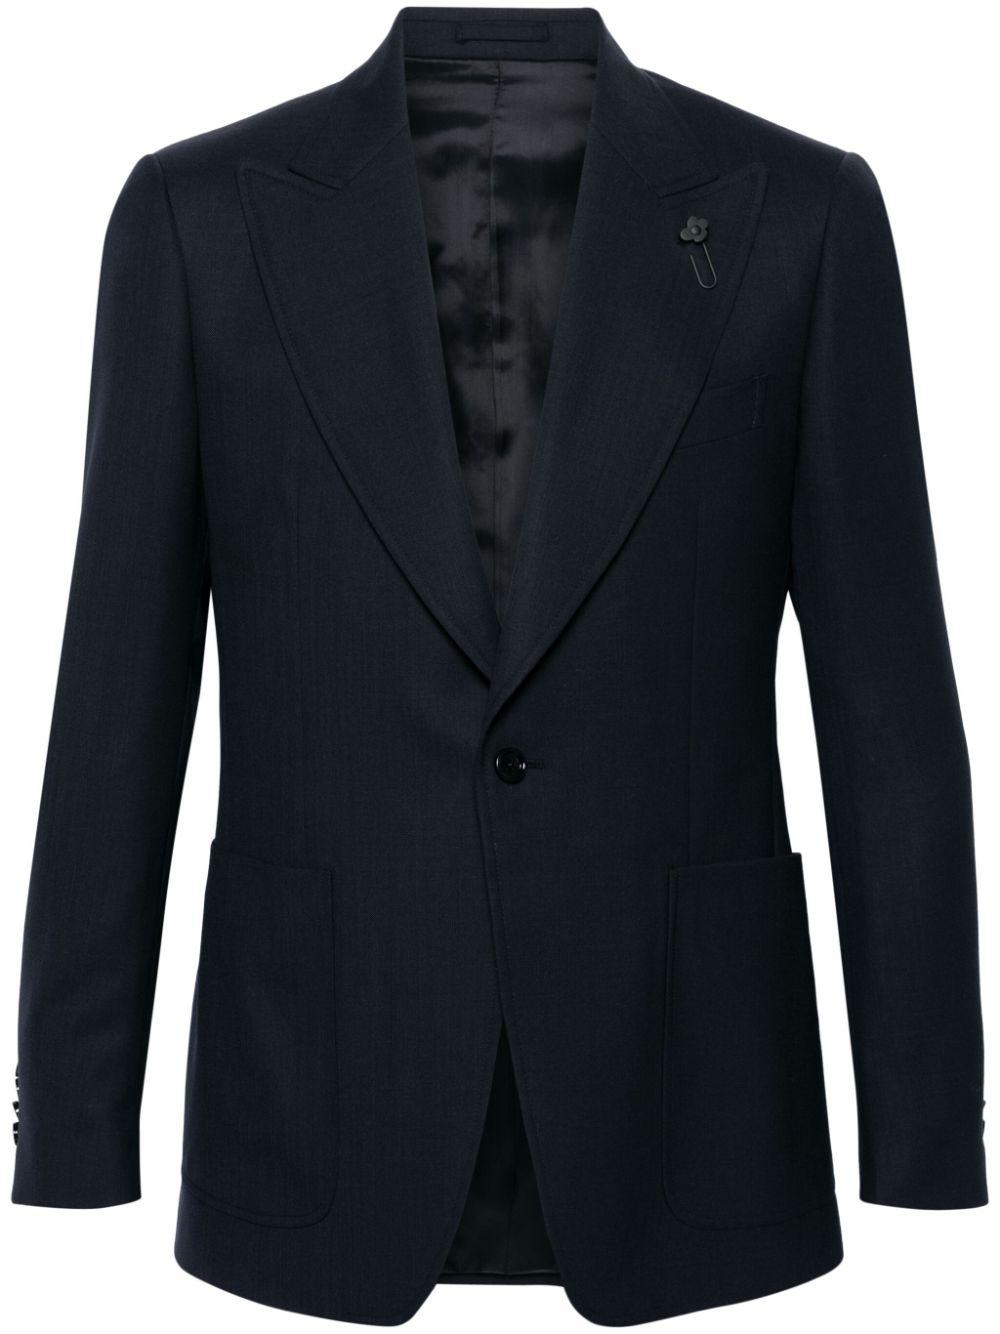 Áo khoác len đen một hàng nút có huy hiệu, dáng chuẩn cho nam - SS24